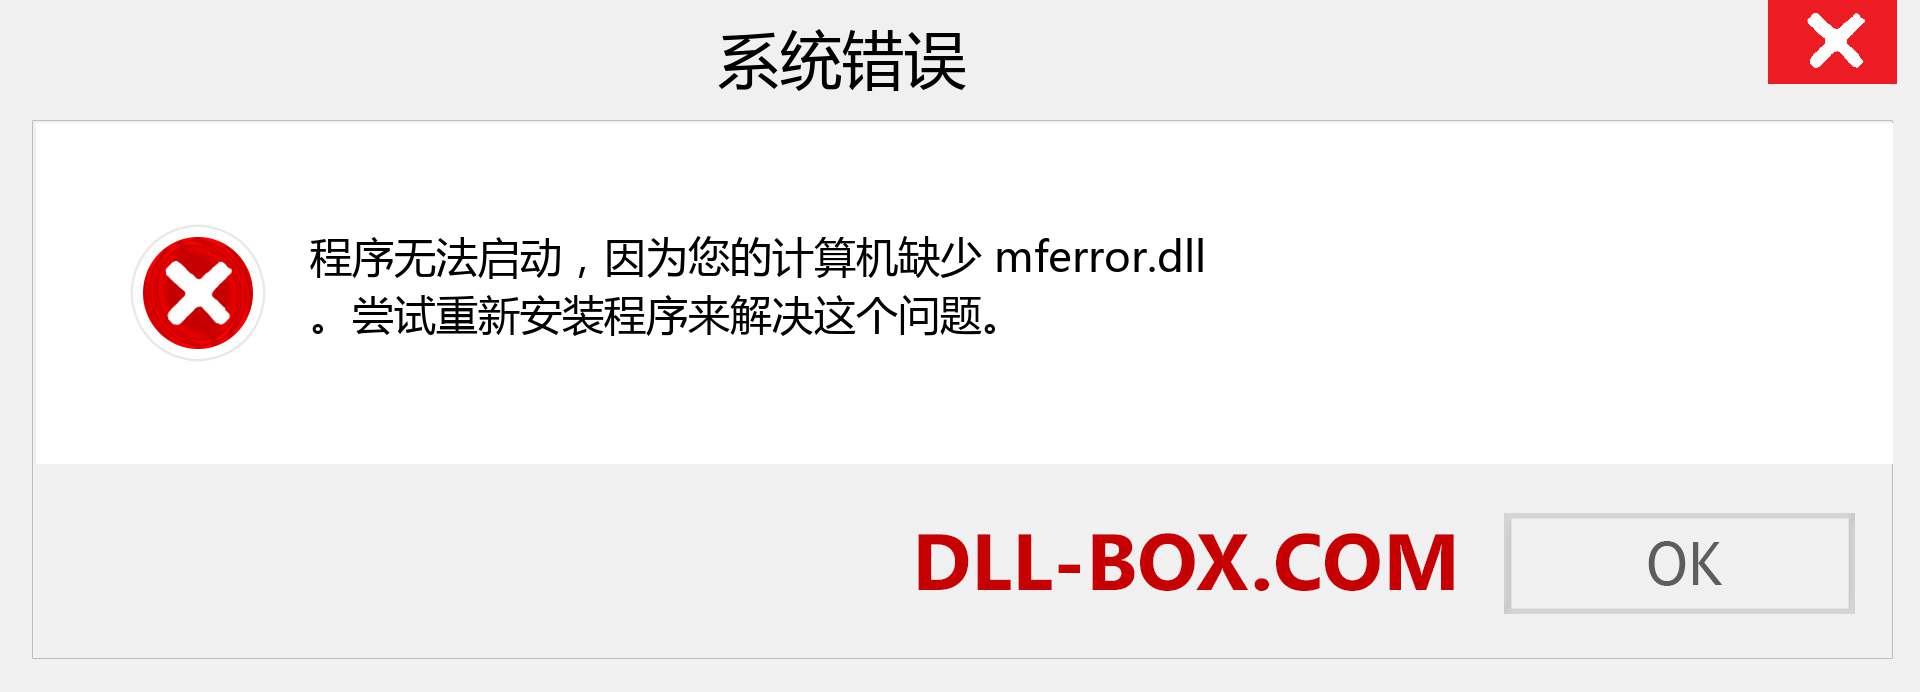 mferror.dll 文件丢失？。 适用于 Windows 7、8、10 的下载 - 修复 Windows、照片、图像上的 mferror dll 丢失错误